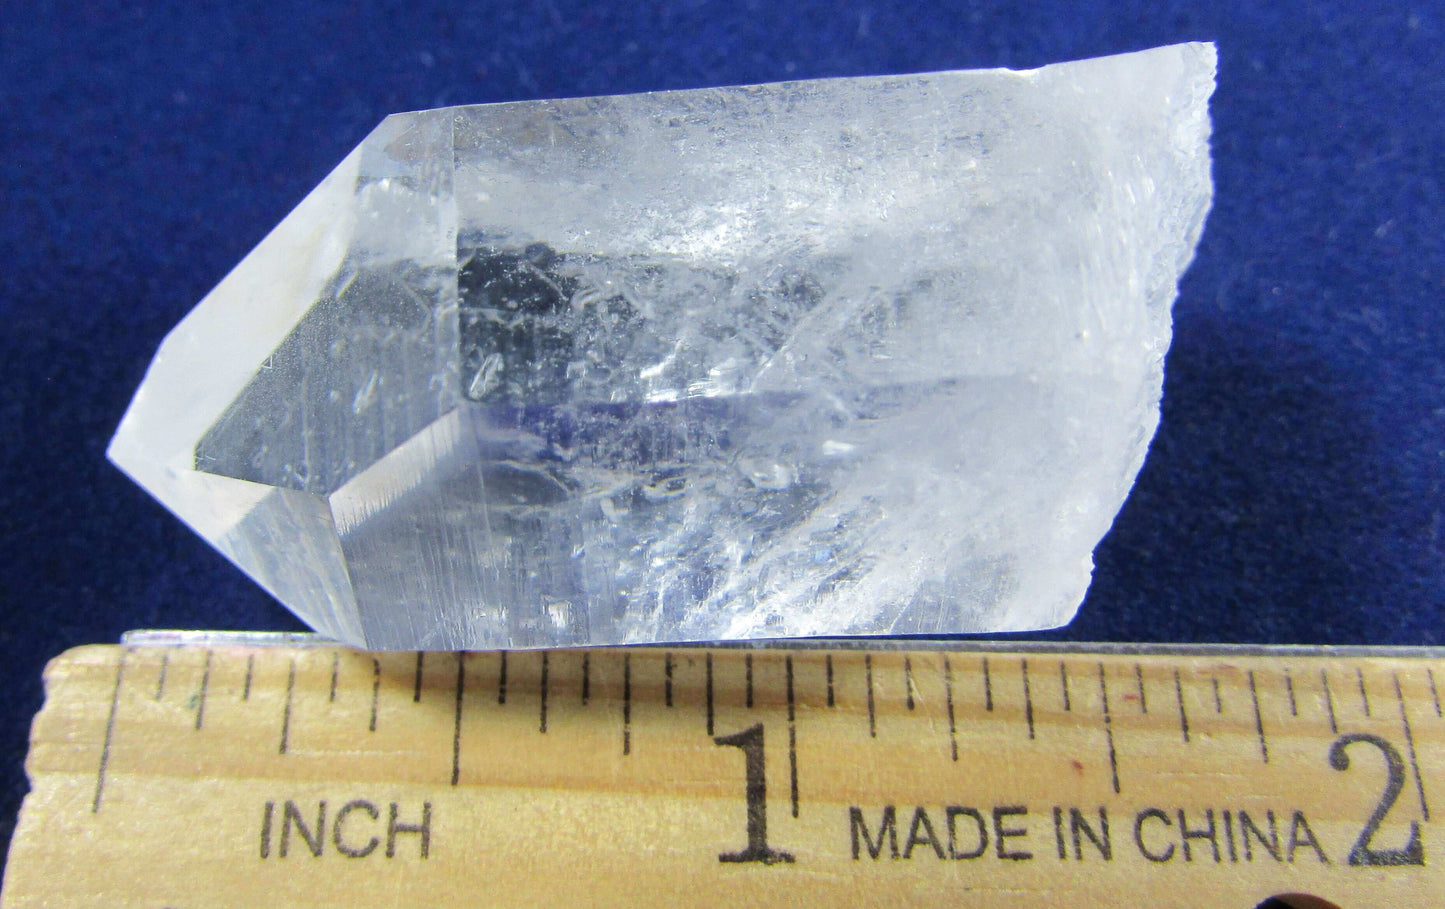 Natural Clear Quartz Crystal Point, Quartz Point, Crystal Point, Quartz Crystal, Grade A